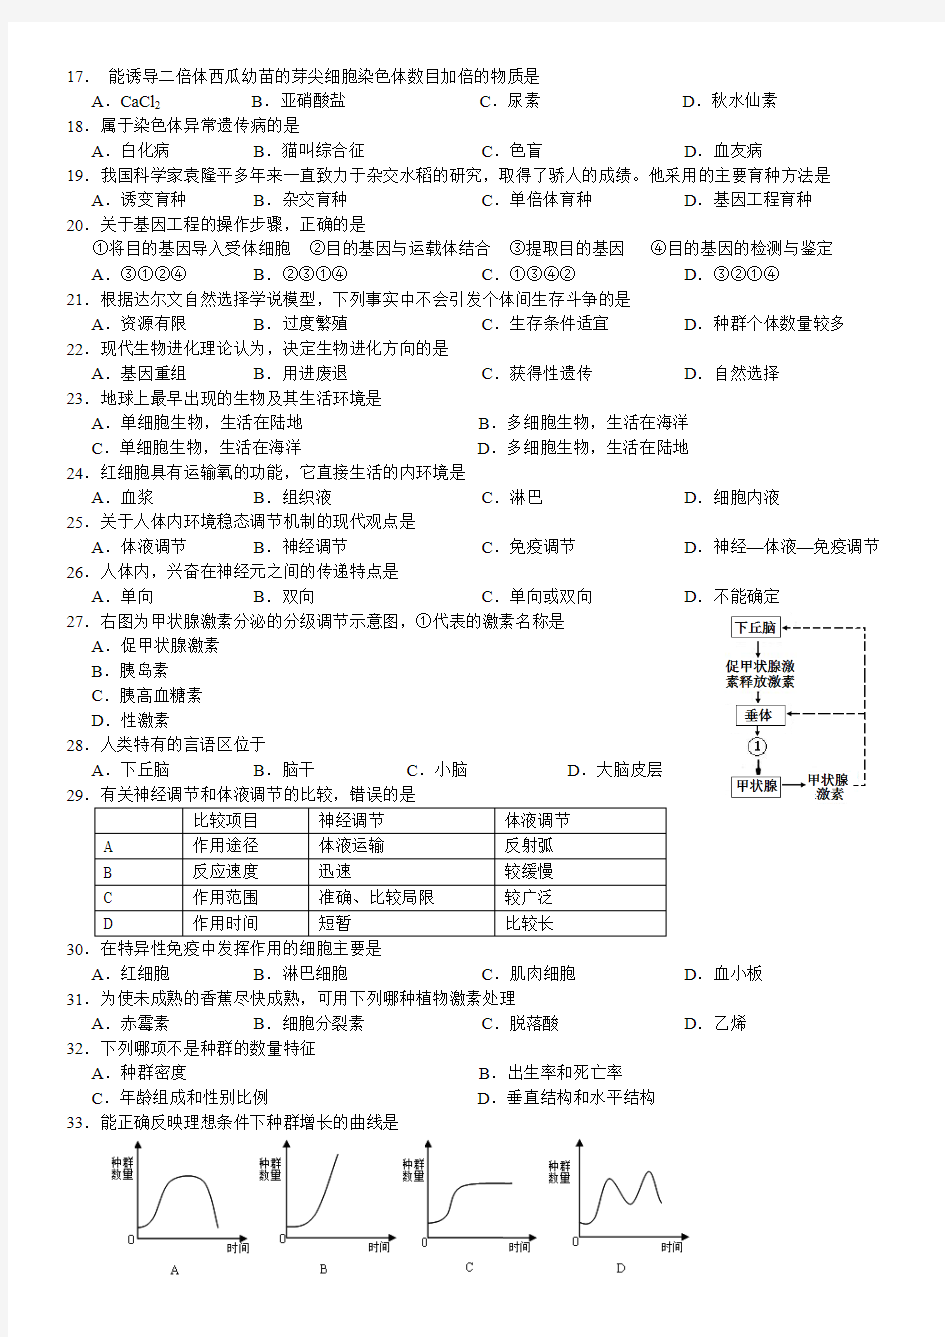 2009-2014年湖南省普通高中生物学业水平考试真题汇编(整理版)